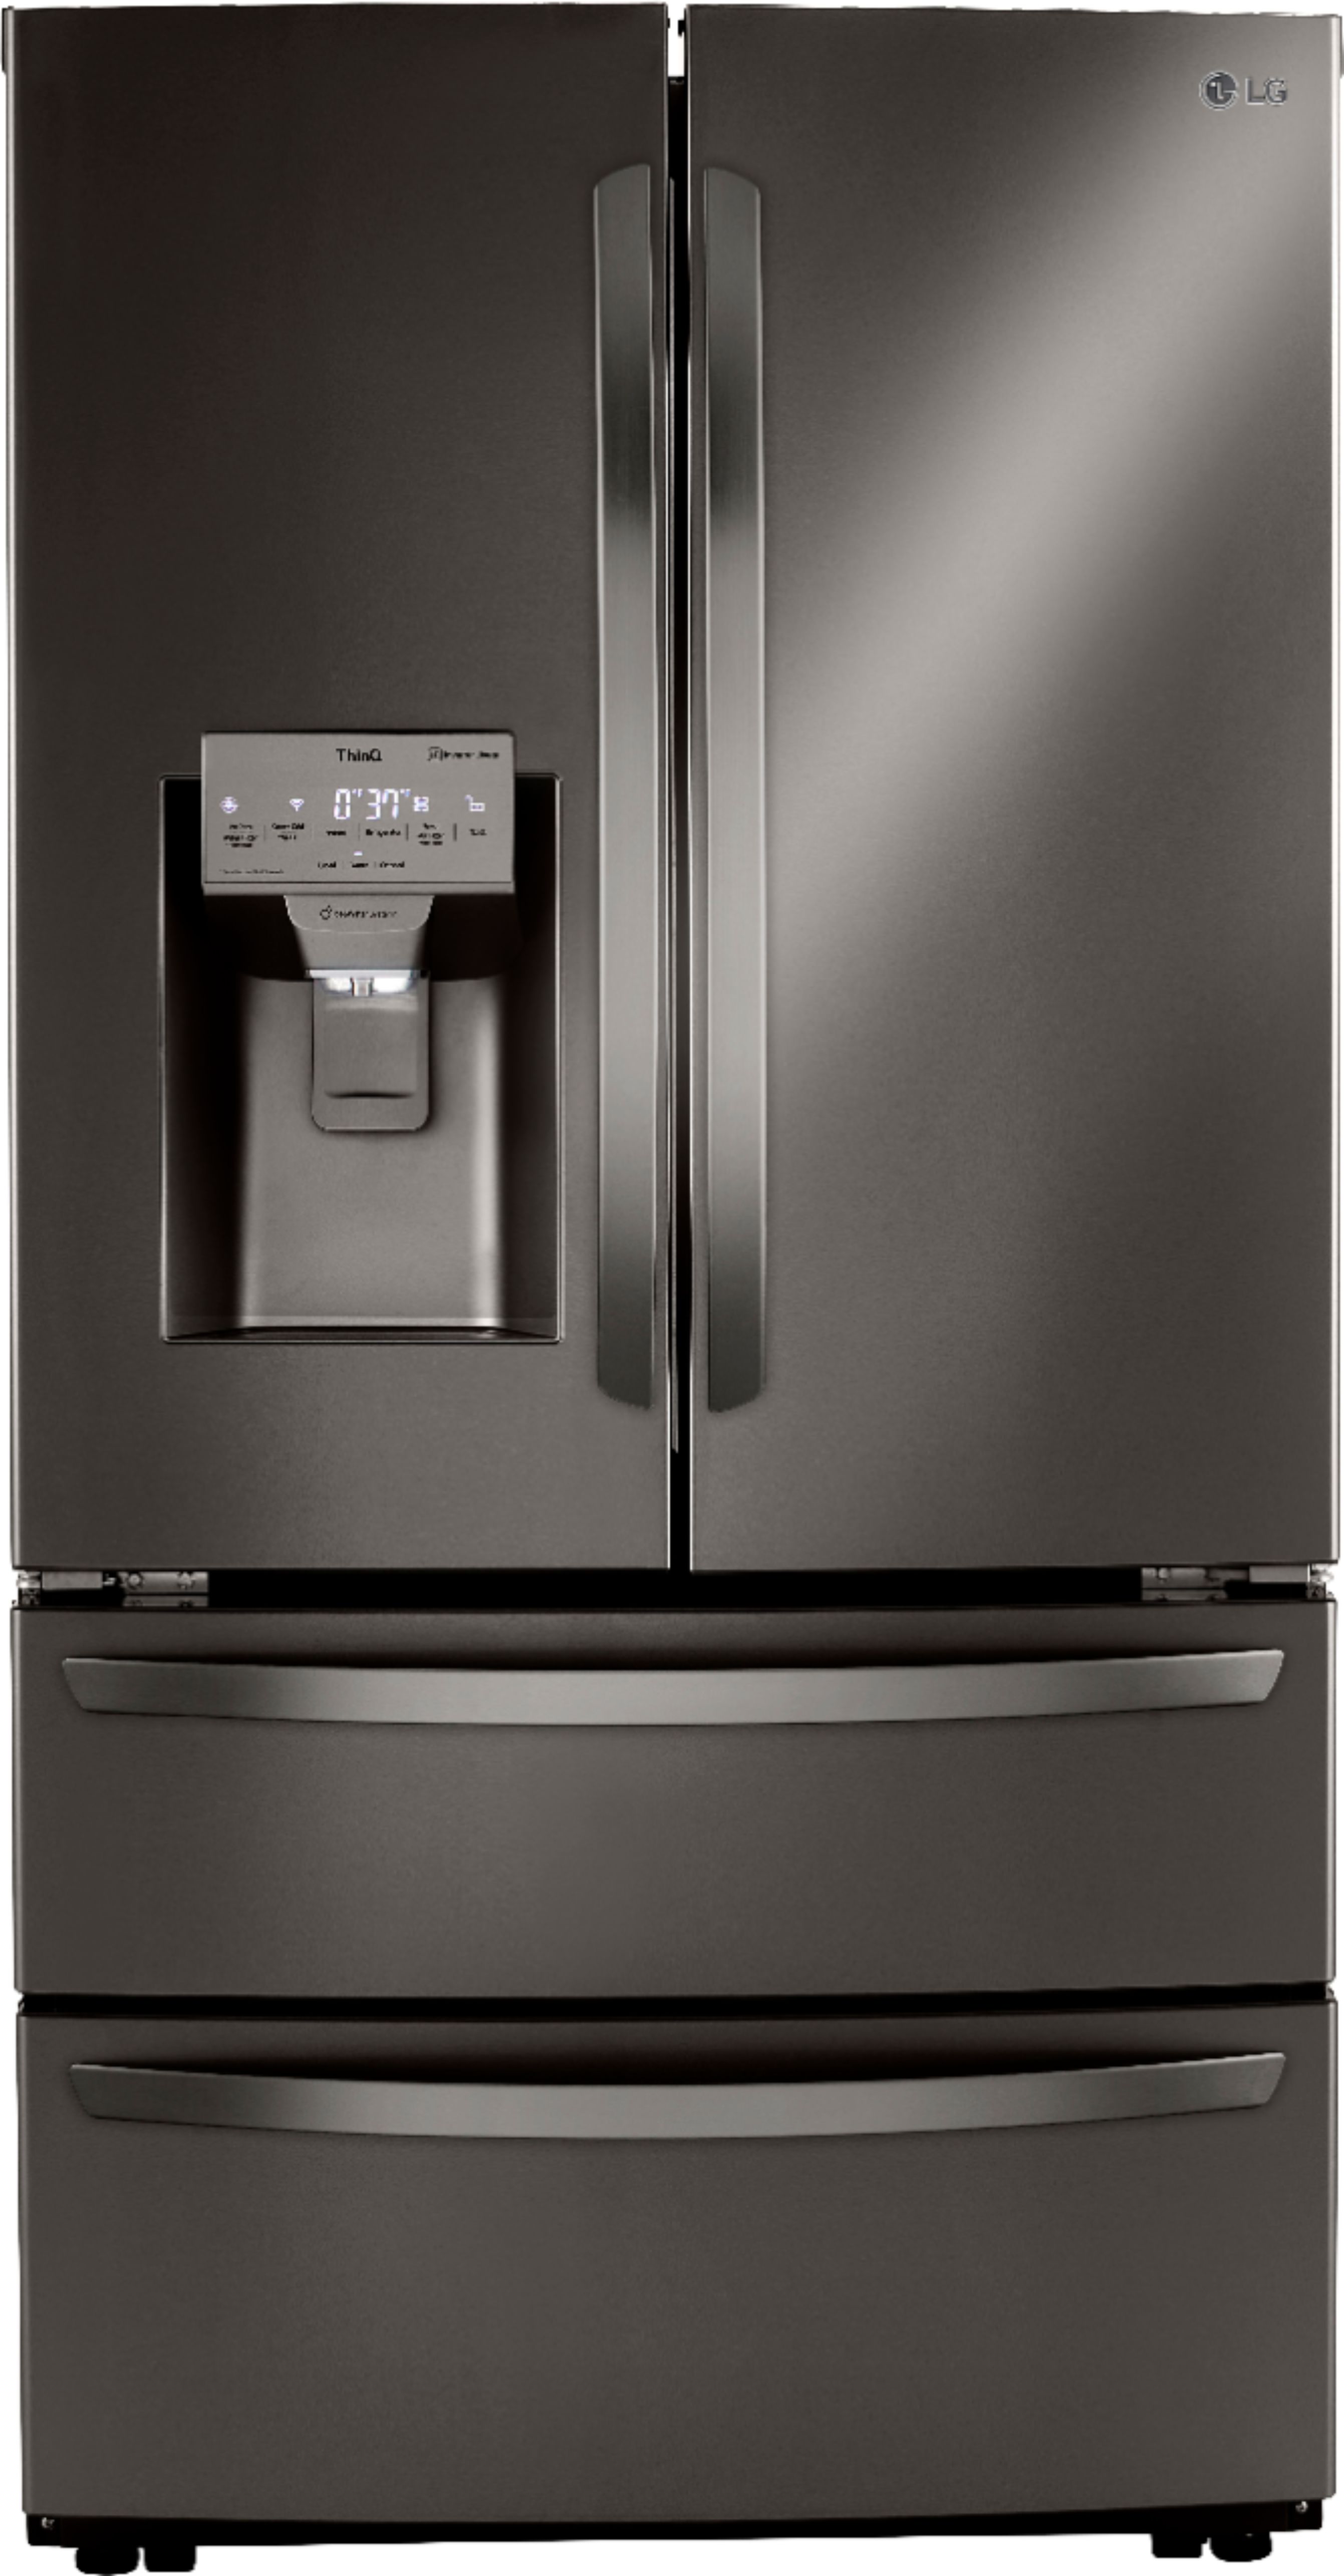 Customer Reviews Lg 22 Cu Ft 4 Door French Door Counter Depth Smart Refrigerator With